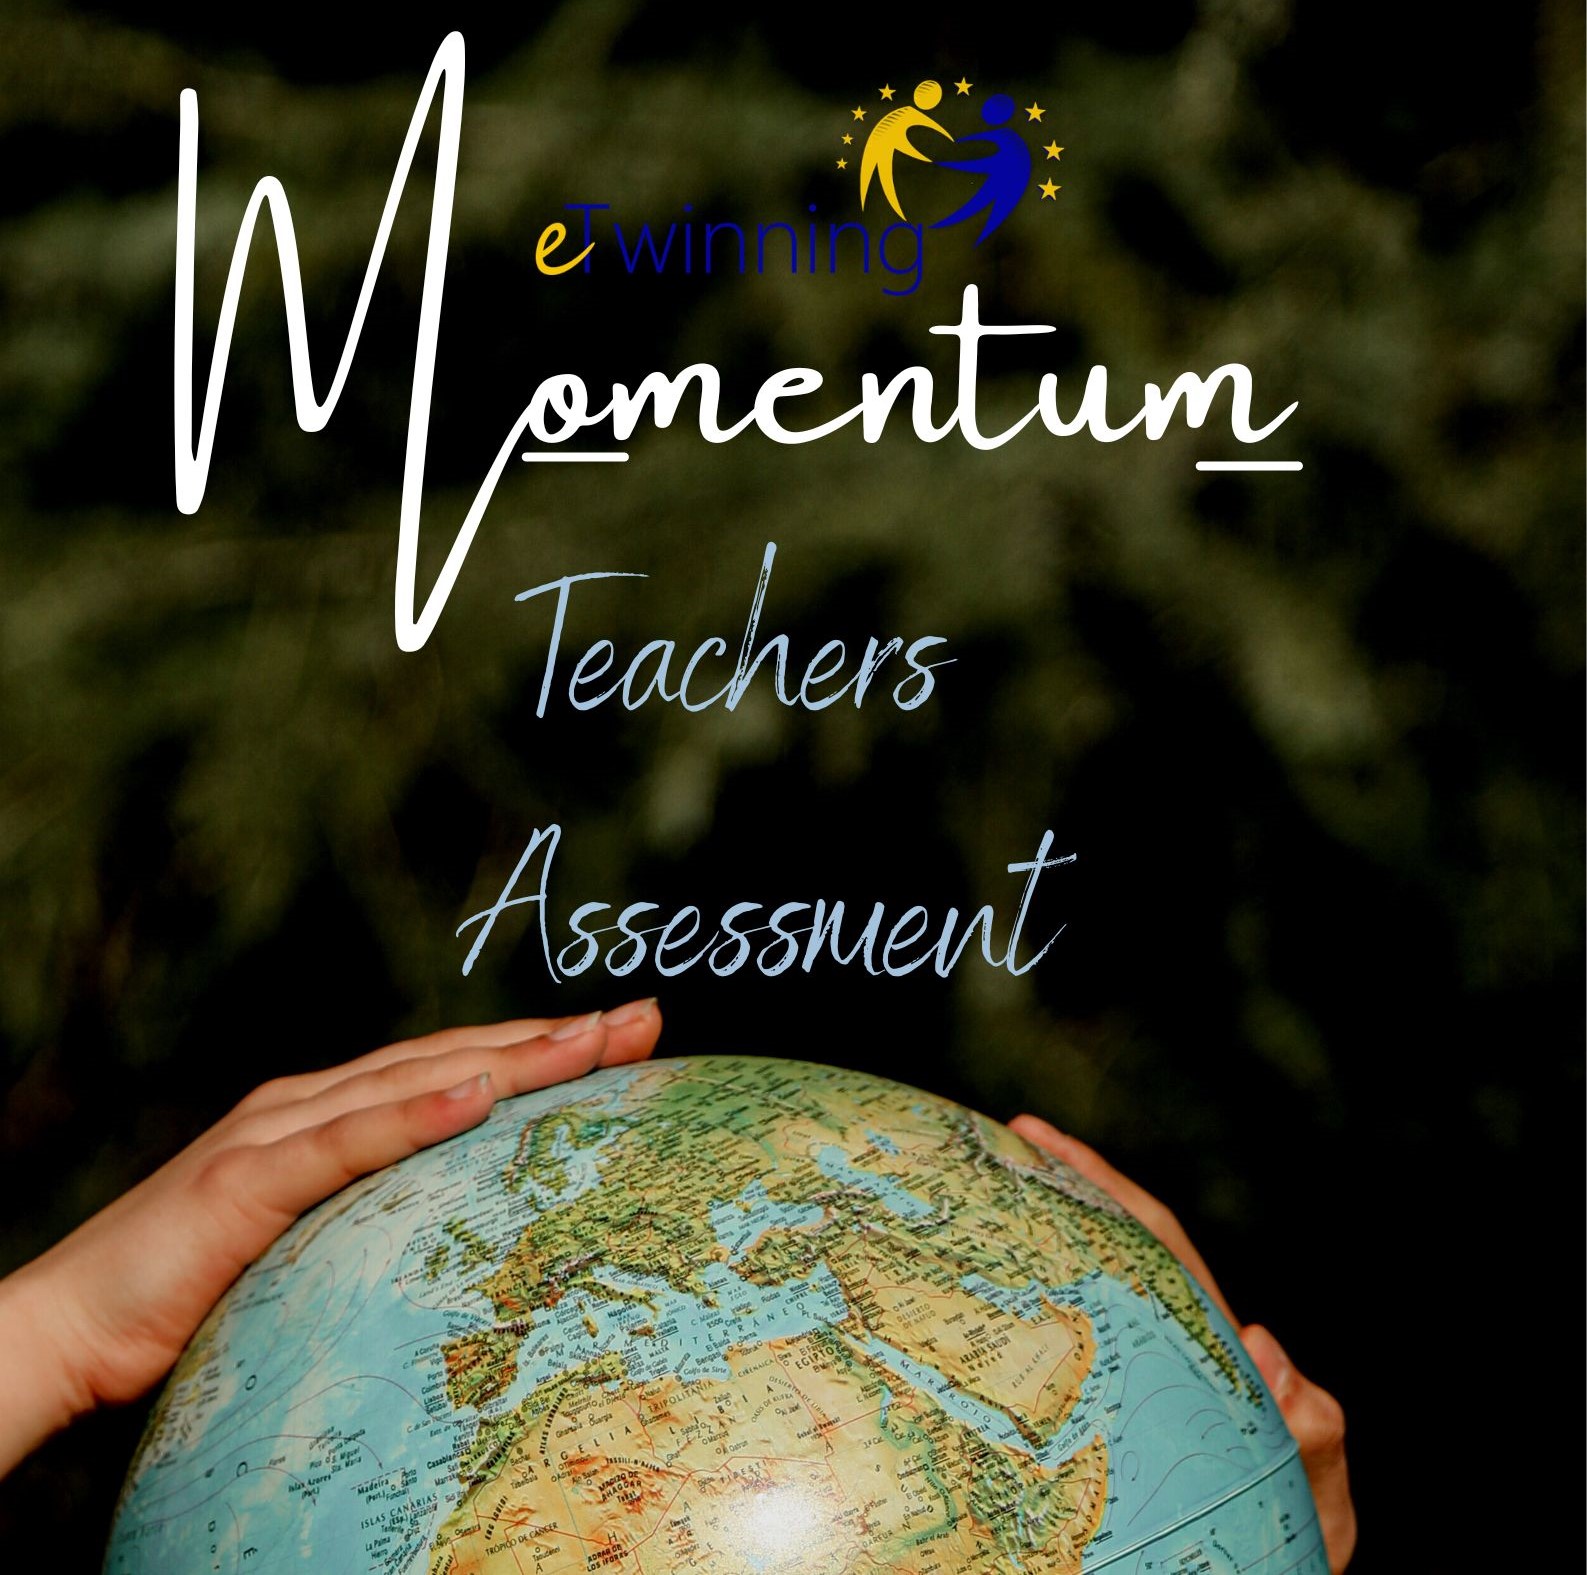 Teachers assessment